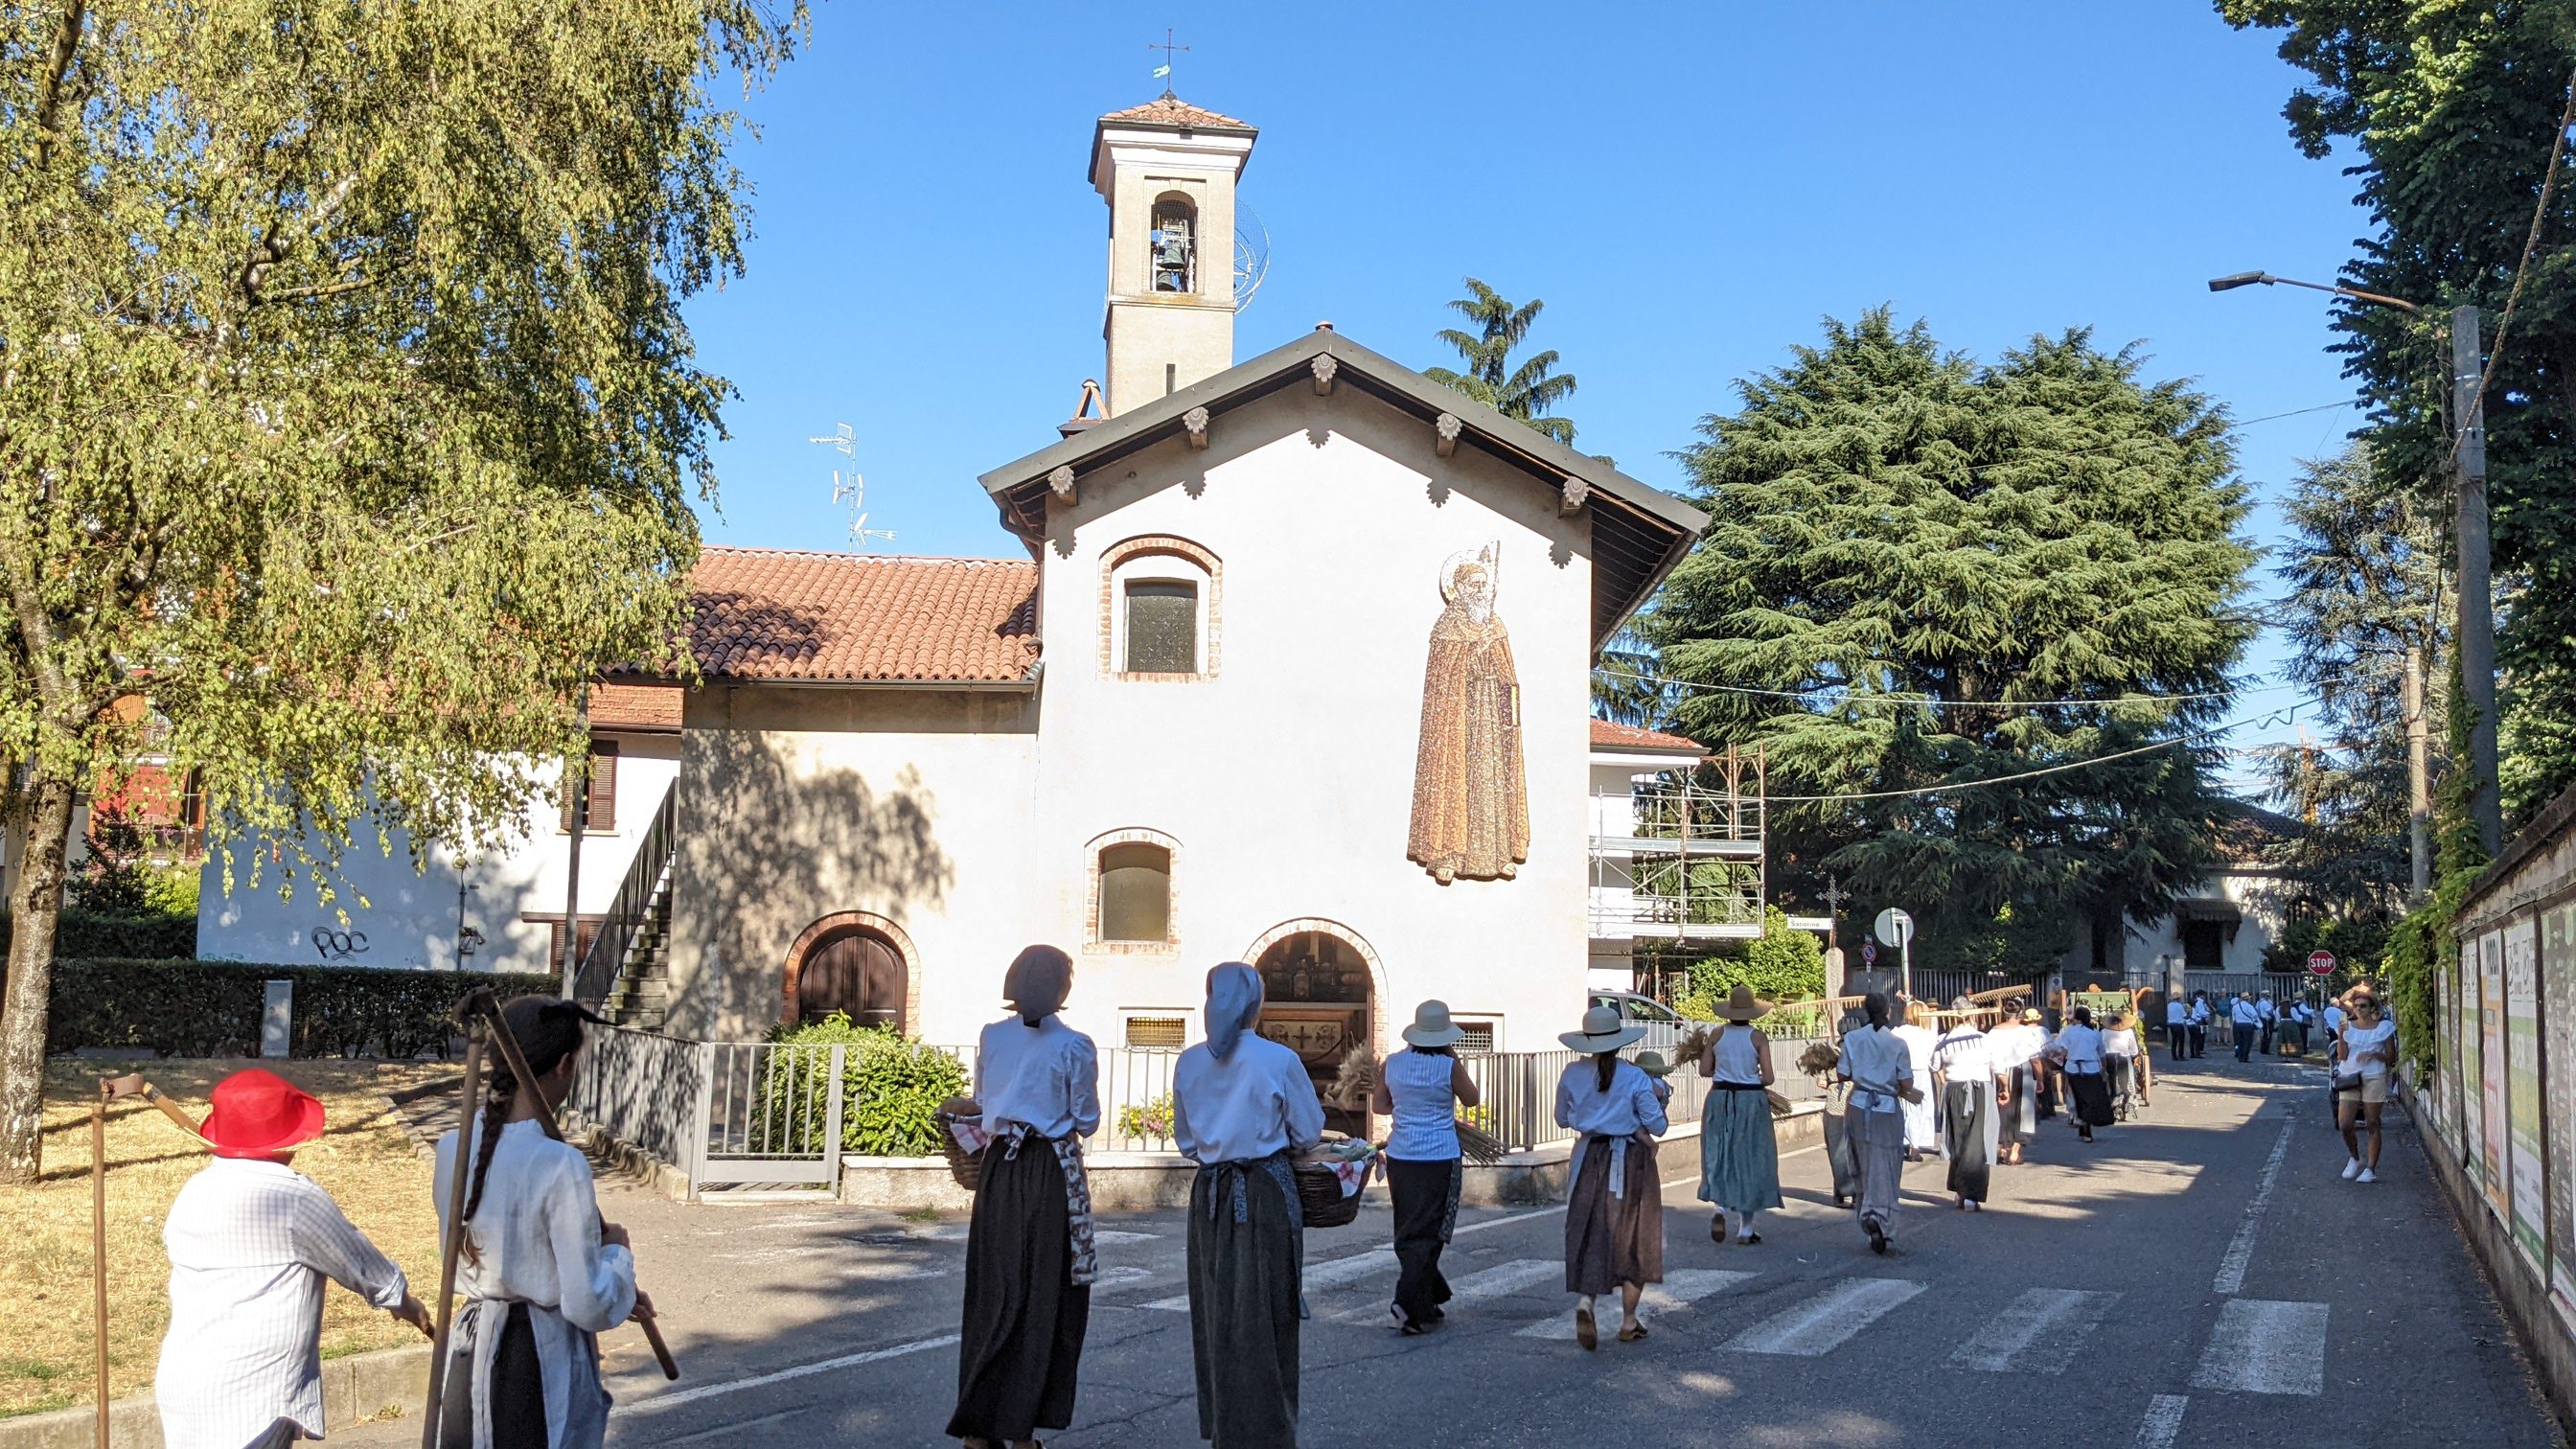 Saronno, scatta e vinci: il concorso di fotografia dedicato a Sant'Antonio  - Il Saronno